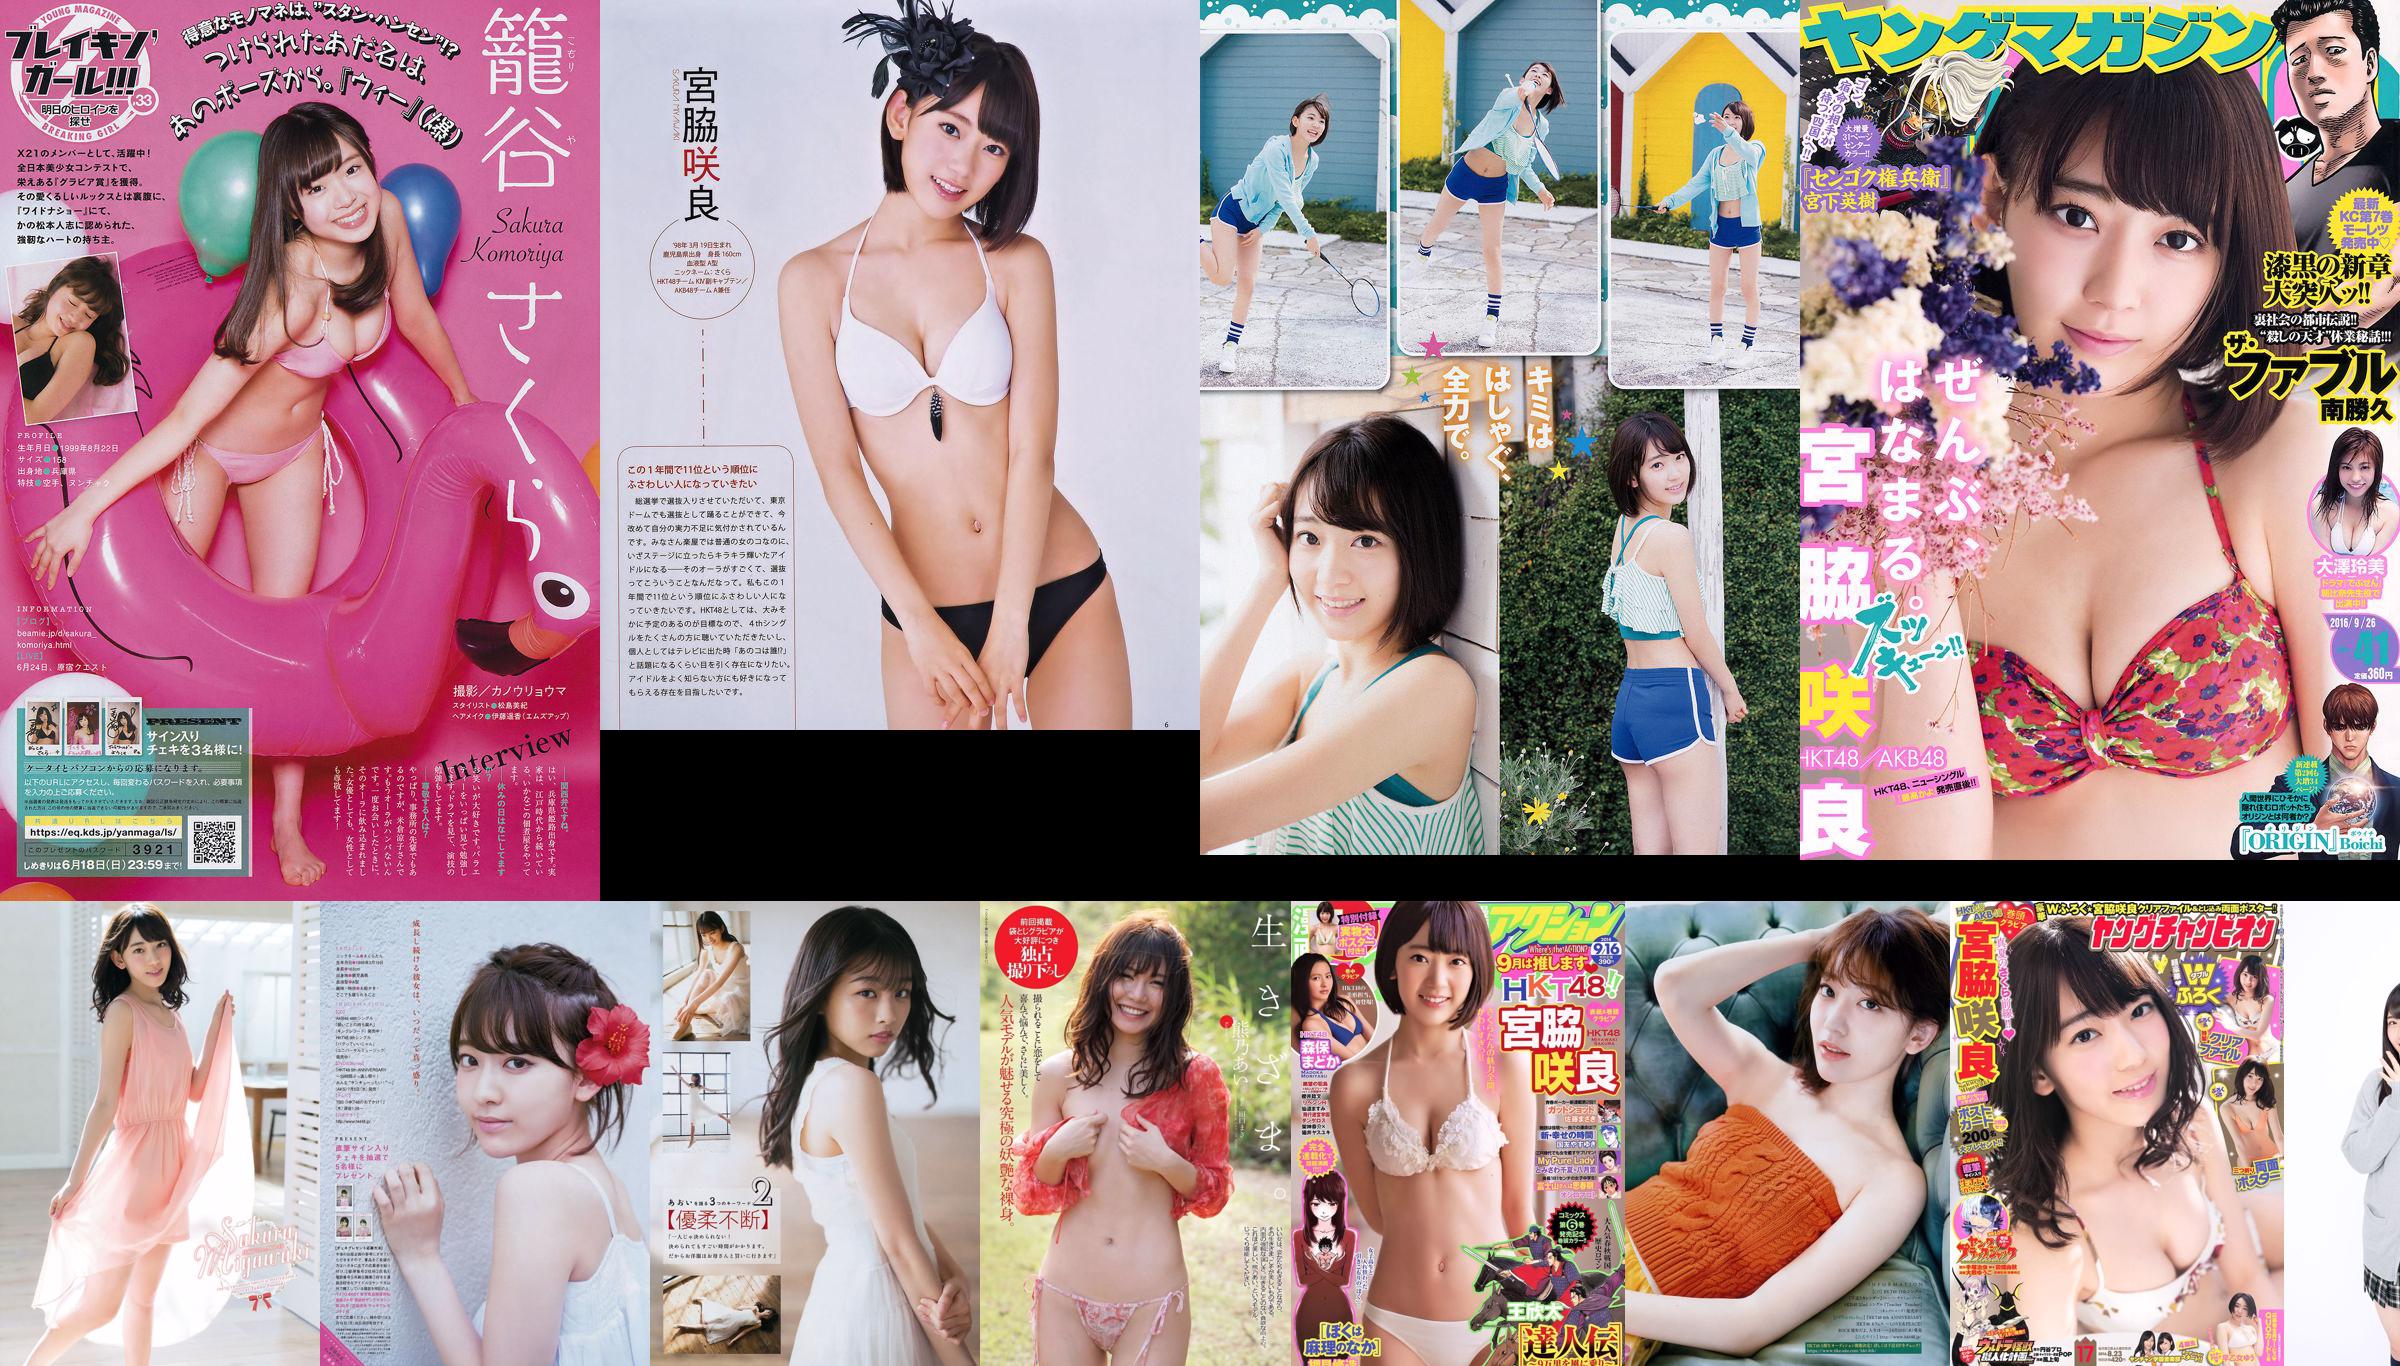 [Young Magazine] Miyawaki Sakira Matsui Jurina 2015 Magazine photo n ° 51 No.69197a Page 6